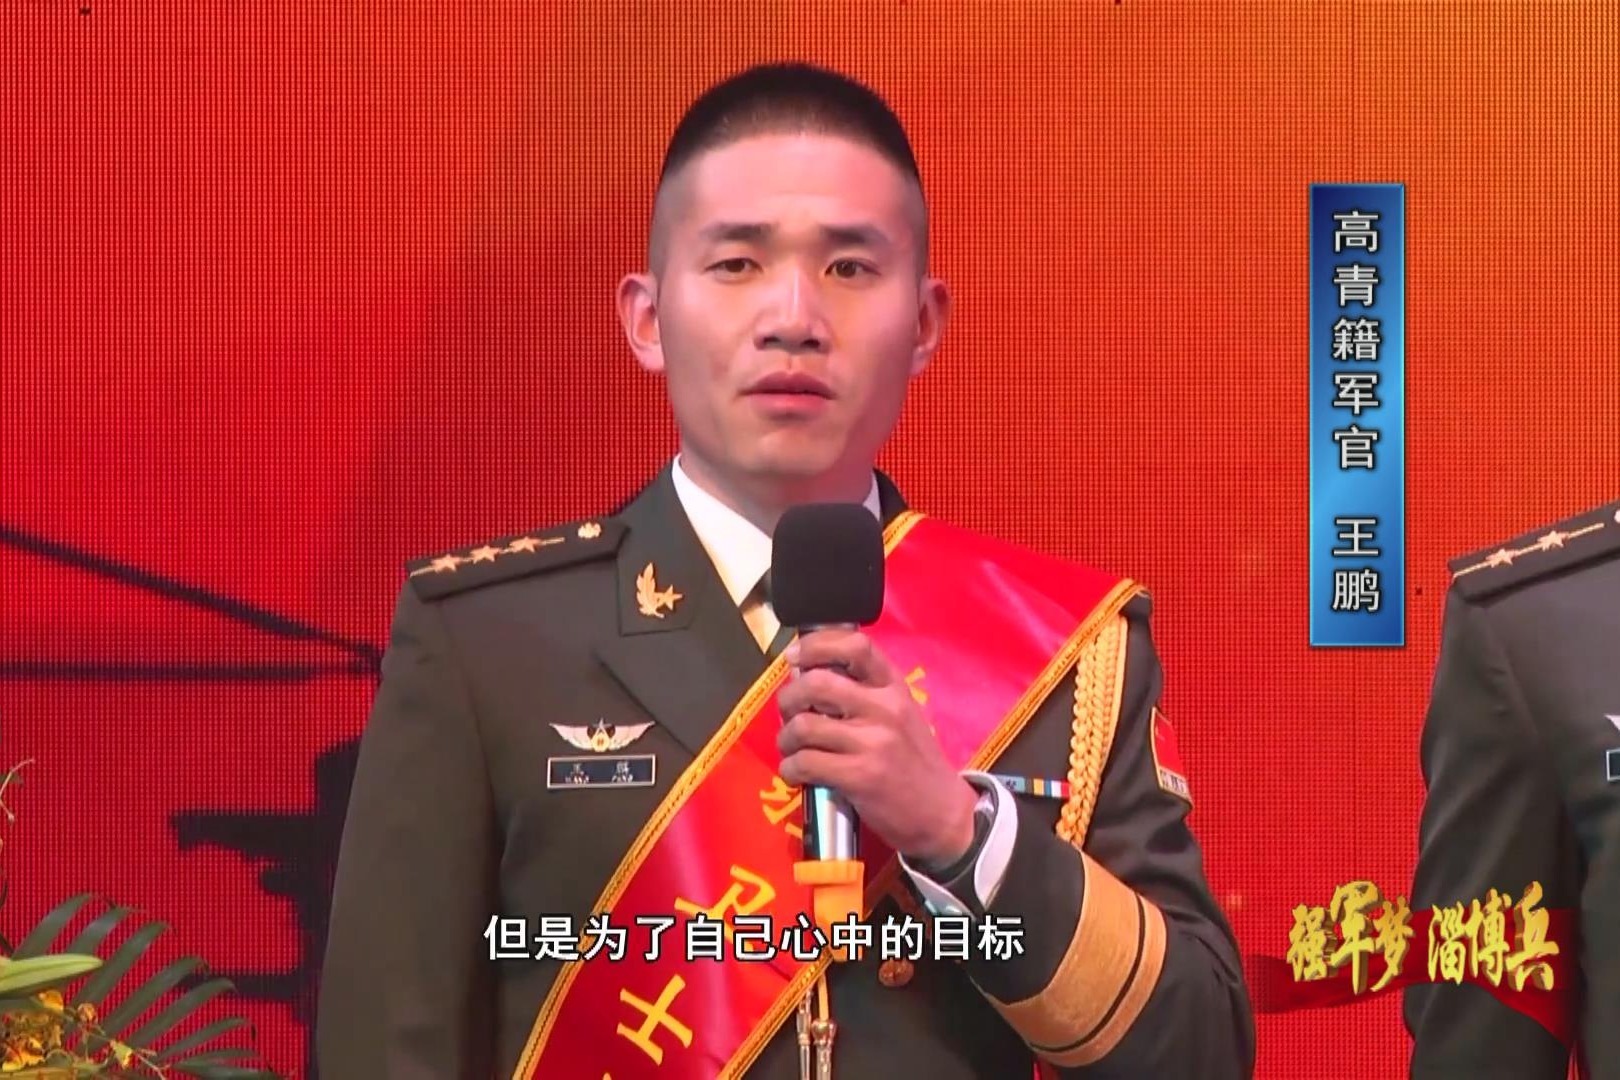 河北省2023年春季退役军人网上招聘活动启动啦 -唐山广电网